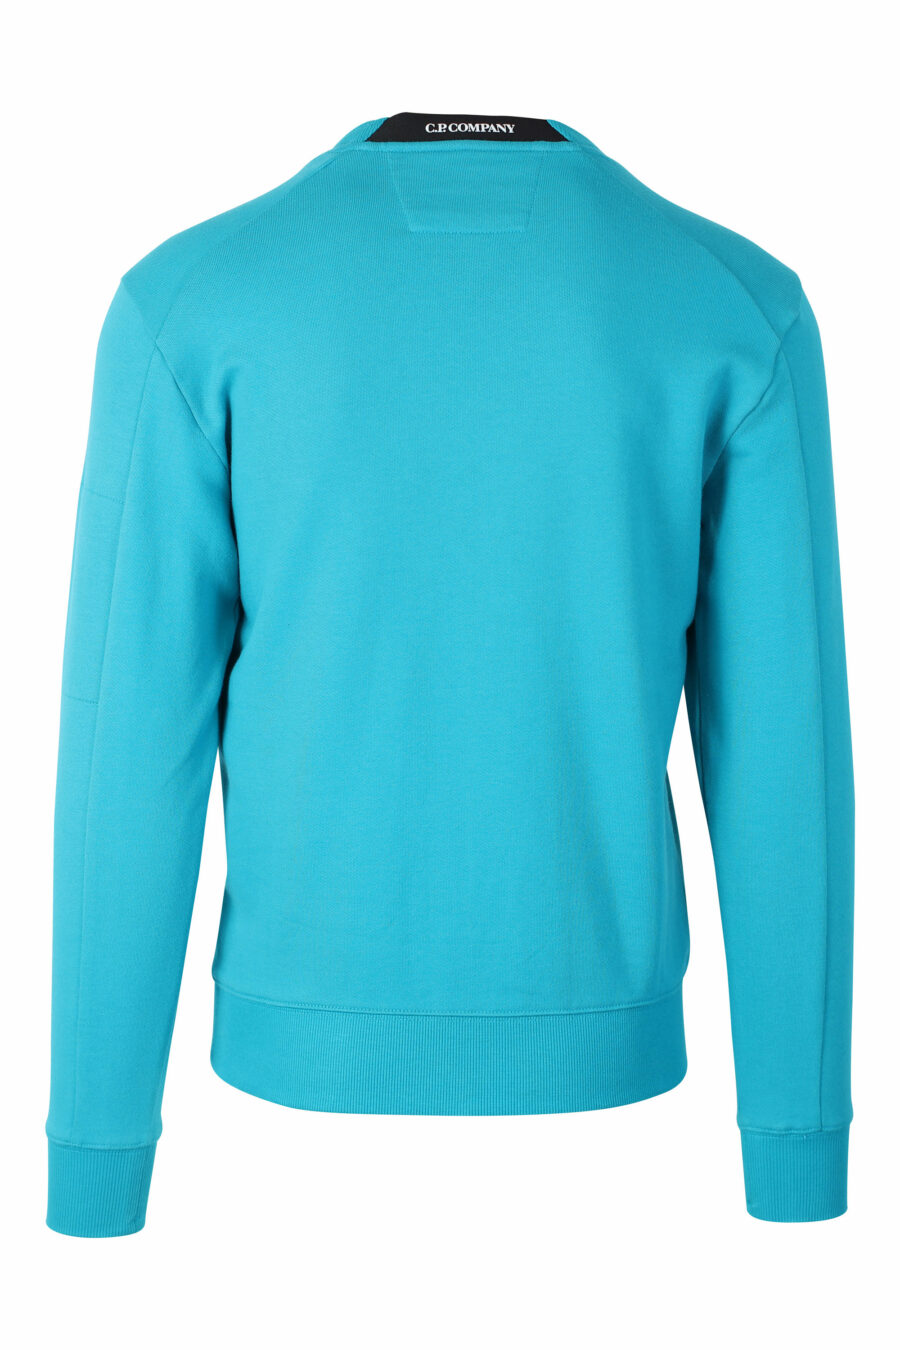 Türkisfarbenes Sweatshirt mit rundem Mini-Logo an der Seite - IMG 2394